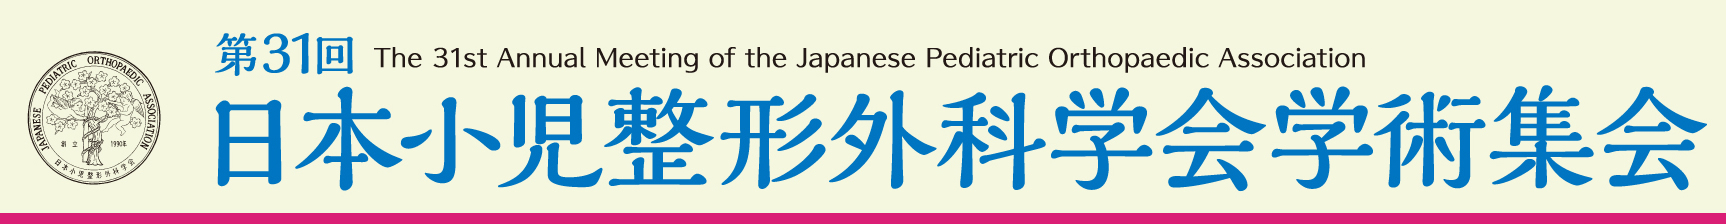 第31回日本小児整形外科学会学術集会